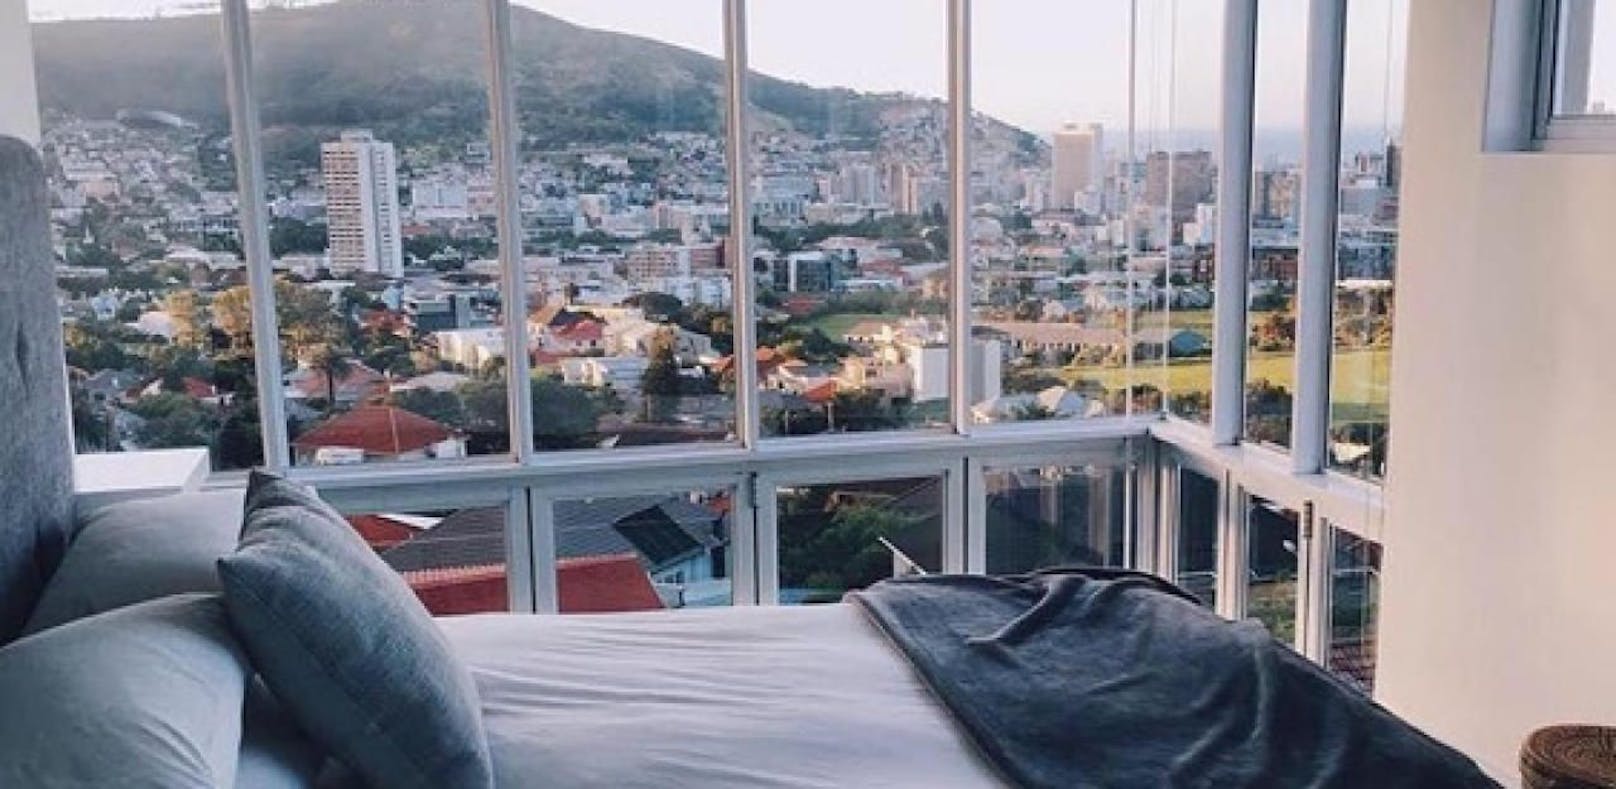 Airbnb führt jetzt eine Luxuskategorie ein